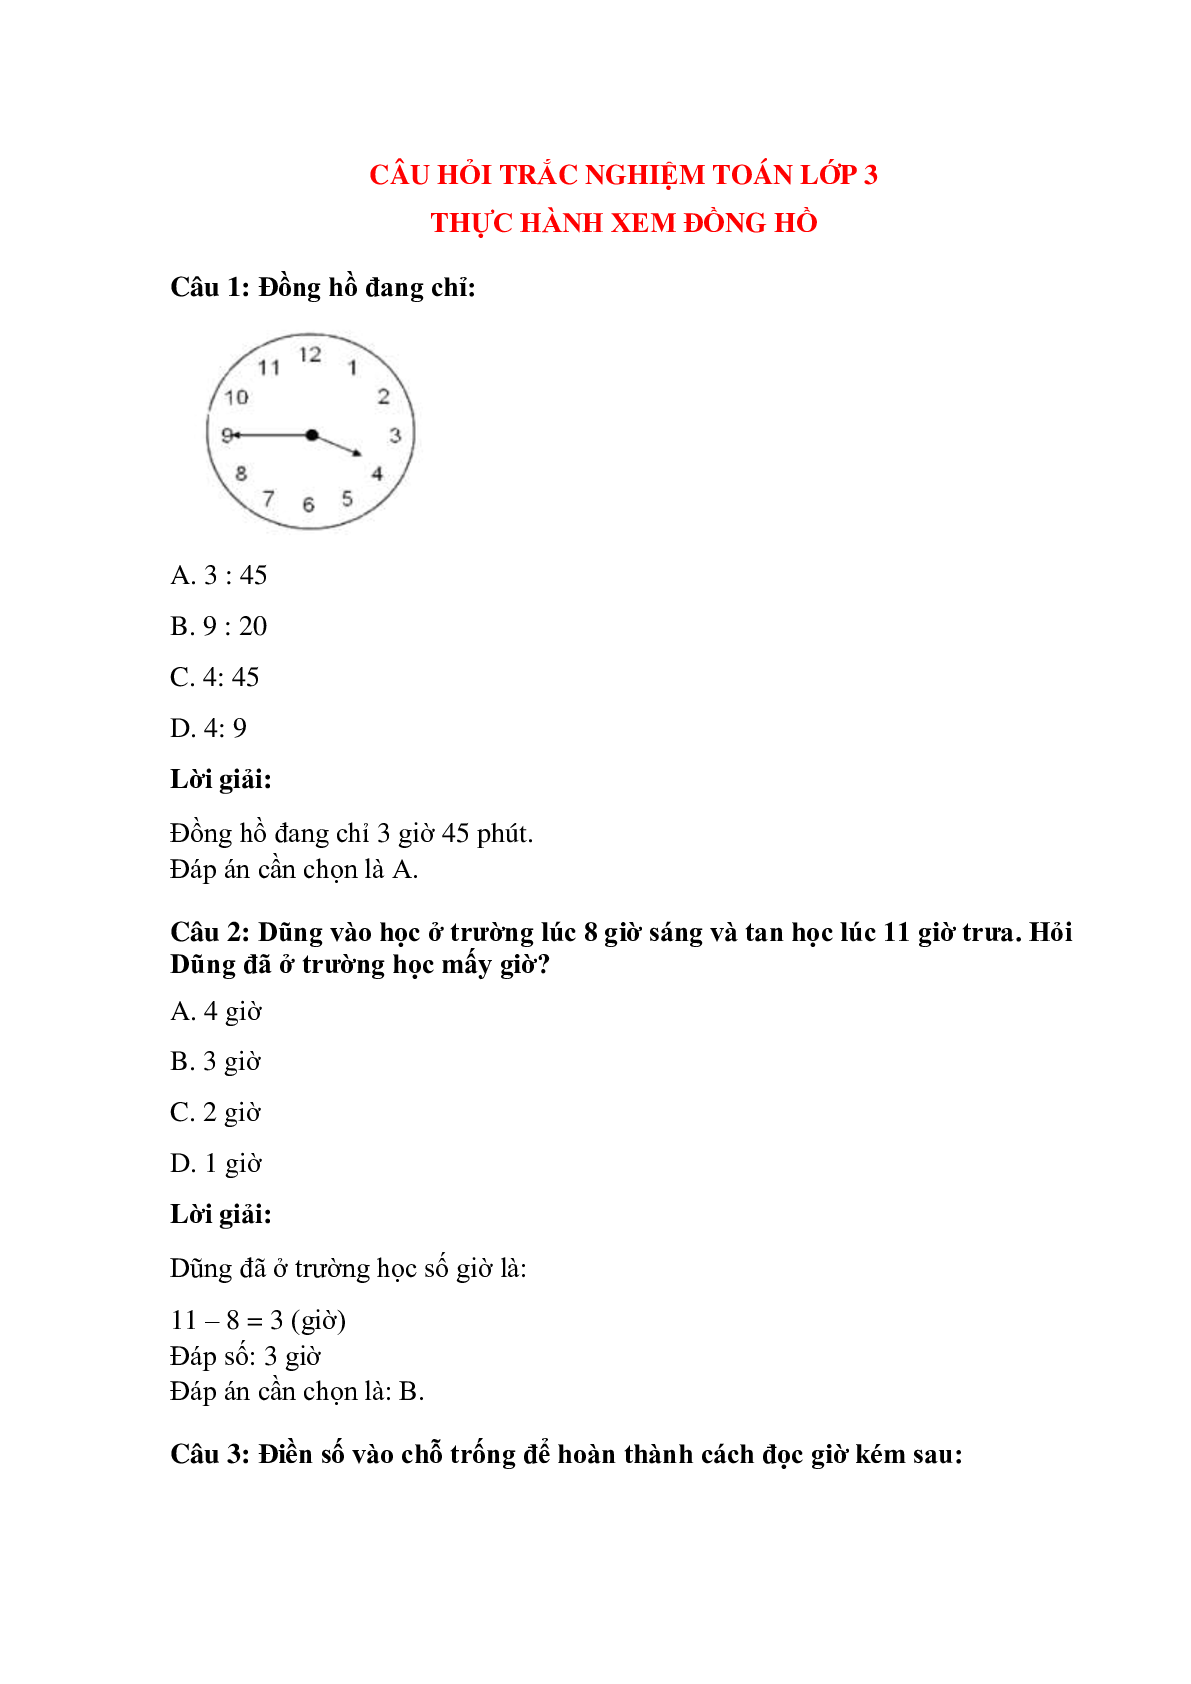 Trắc nghiệm Thực hành xem đồng hồ có đáp án – Toán lớp 3 (trang 1)